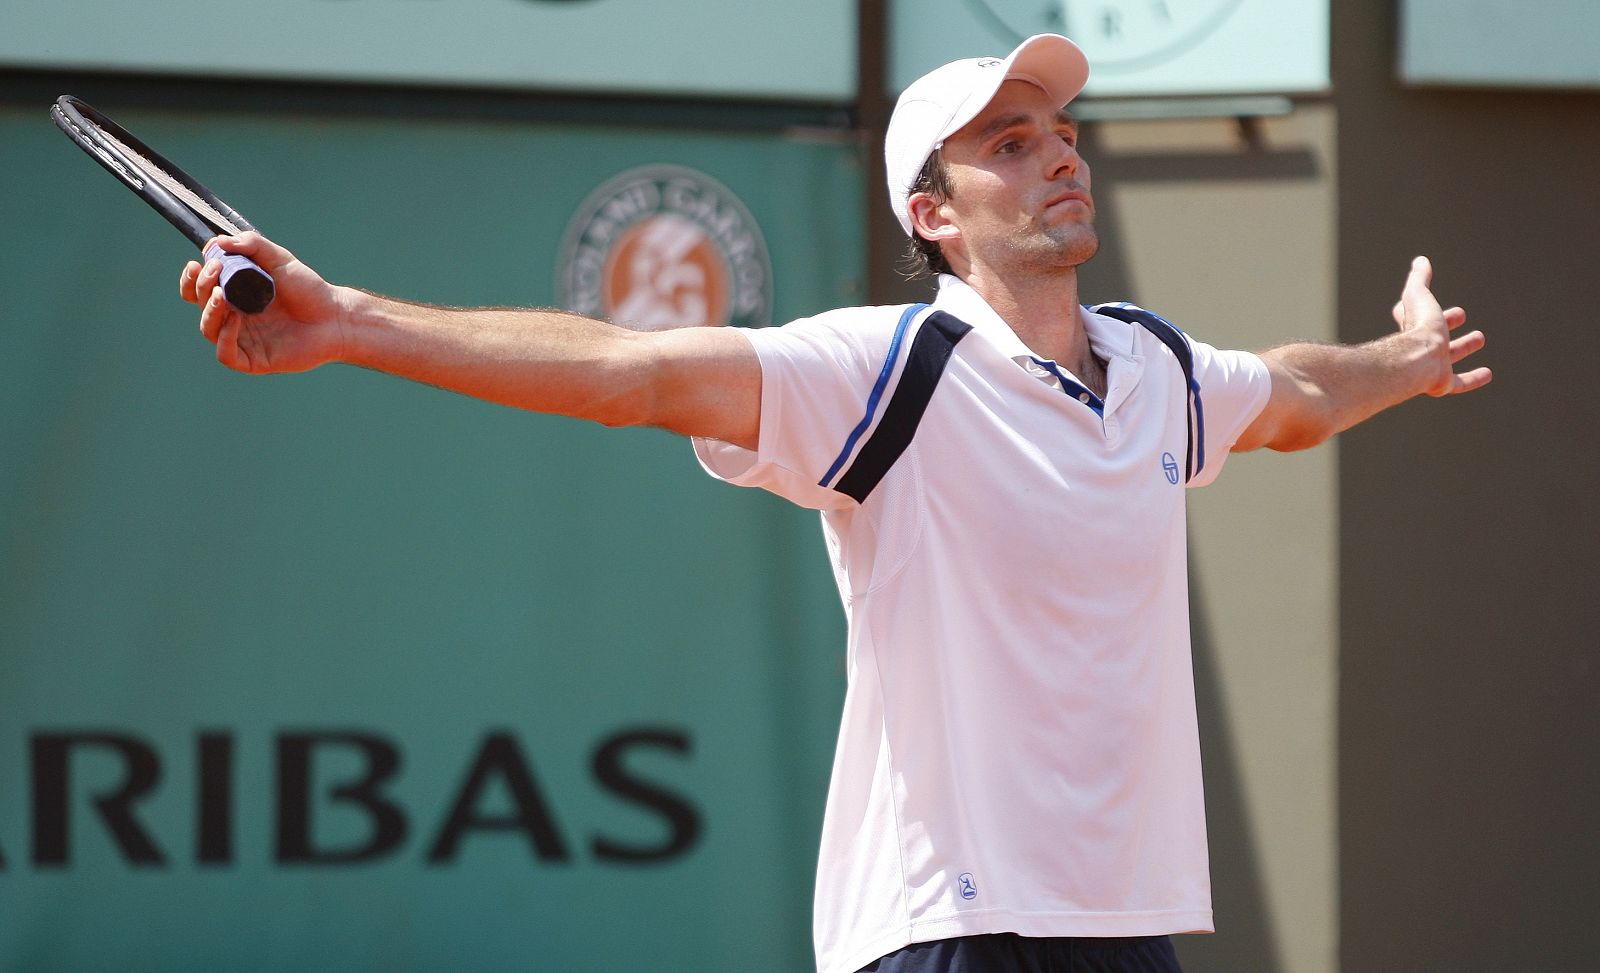 Ivo Karlovic gestures during his match against Lleyton Hewitt at Roland Garros in Paris